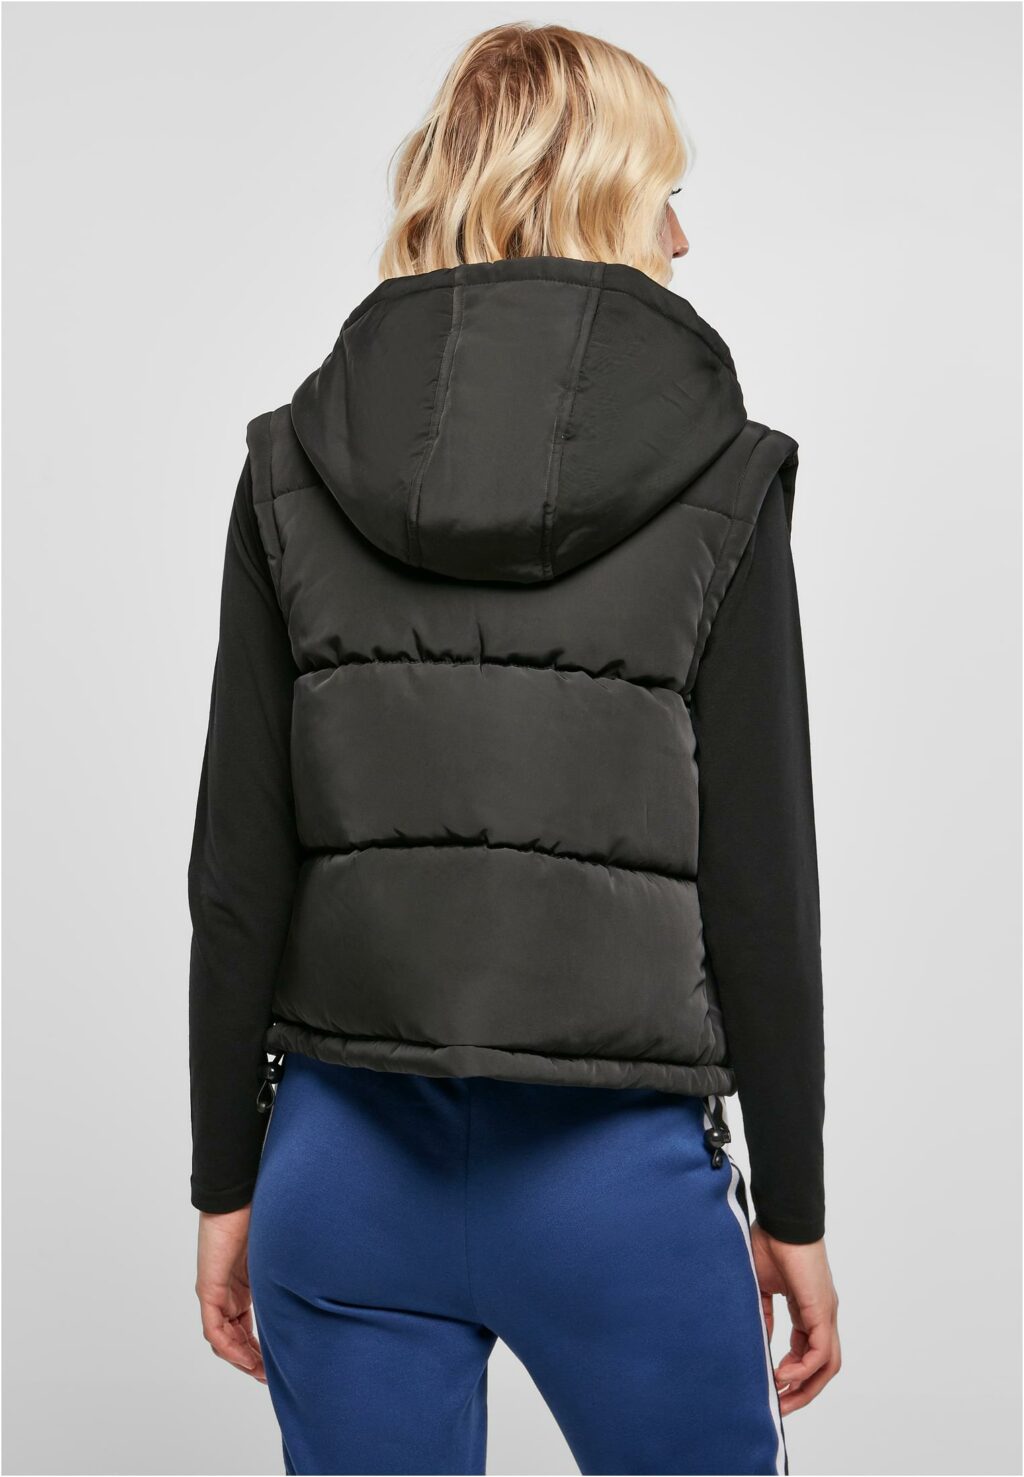 Urban Classics Ladies Recycled Twill Puffer Vest black TB5083